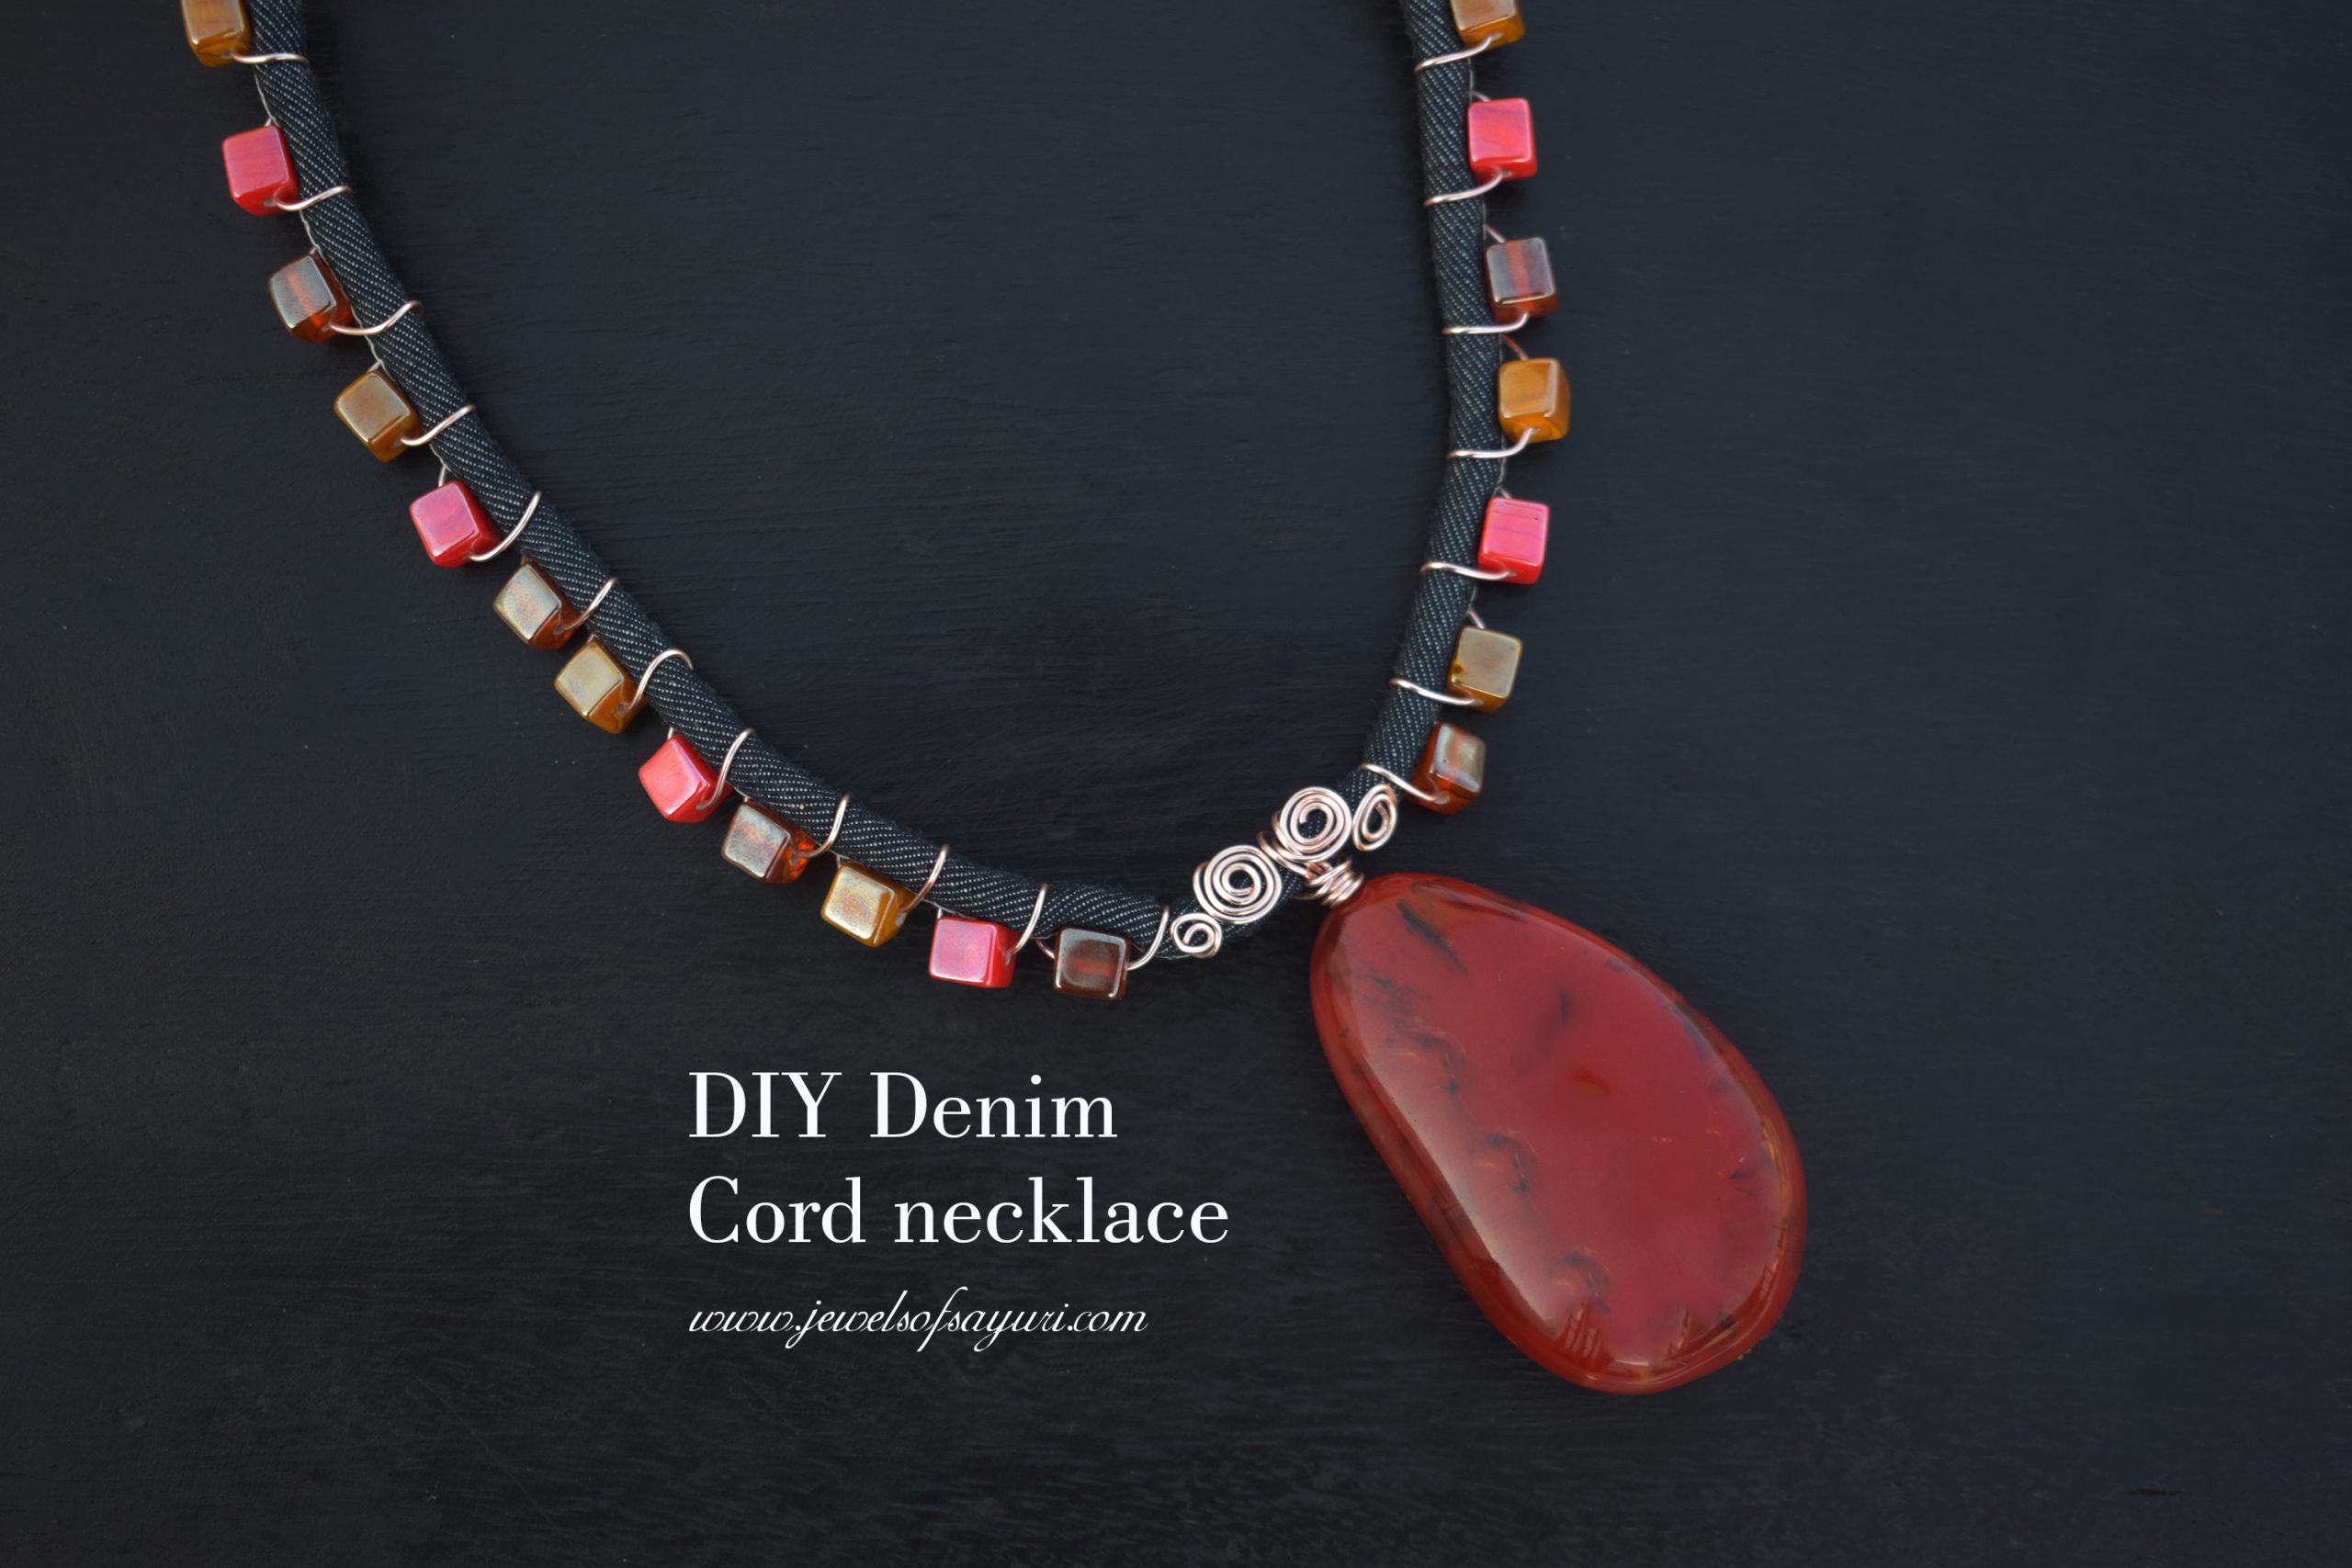 DIY Denim cord necklace